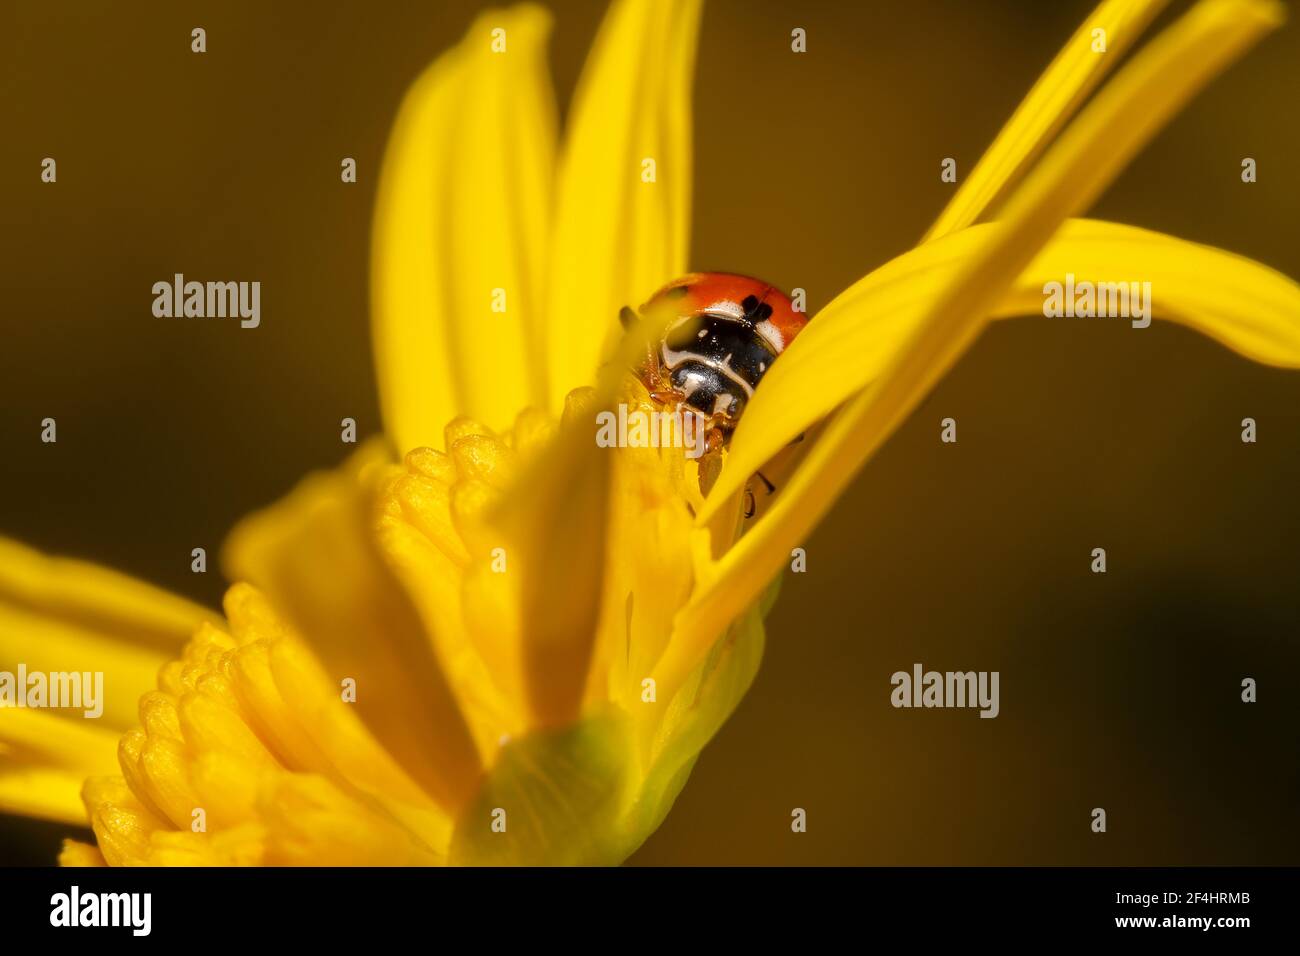 Ladybug puntato arancione e nero incastrato tra i petali di A. daisy fiore Foto Stock